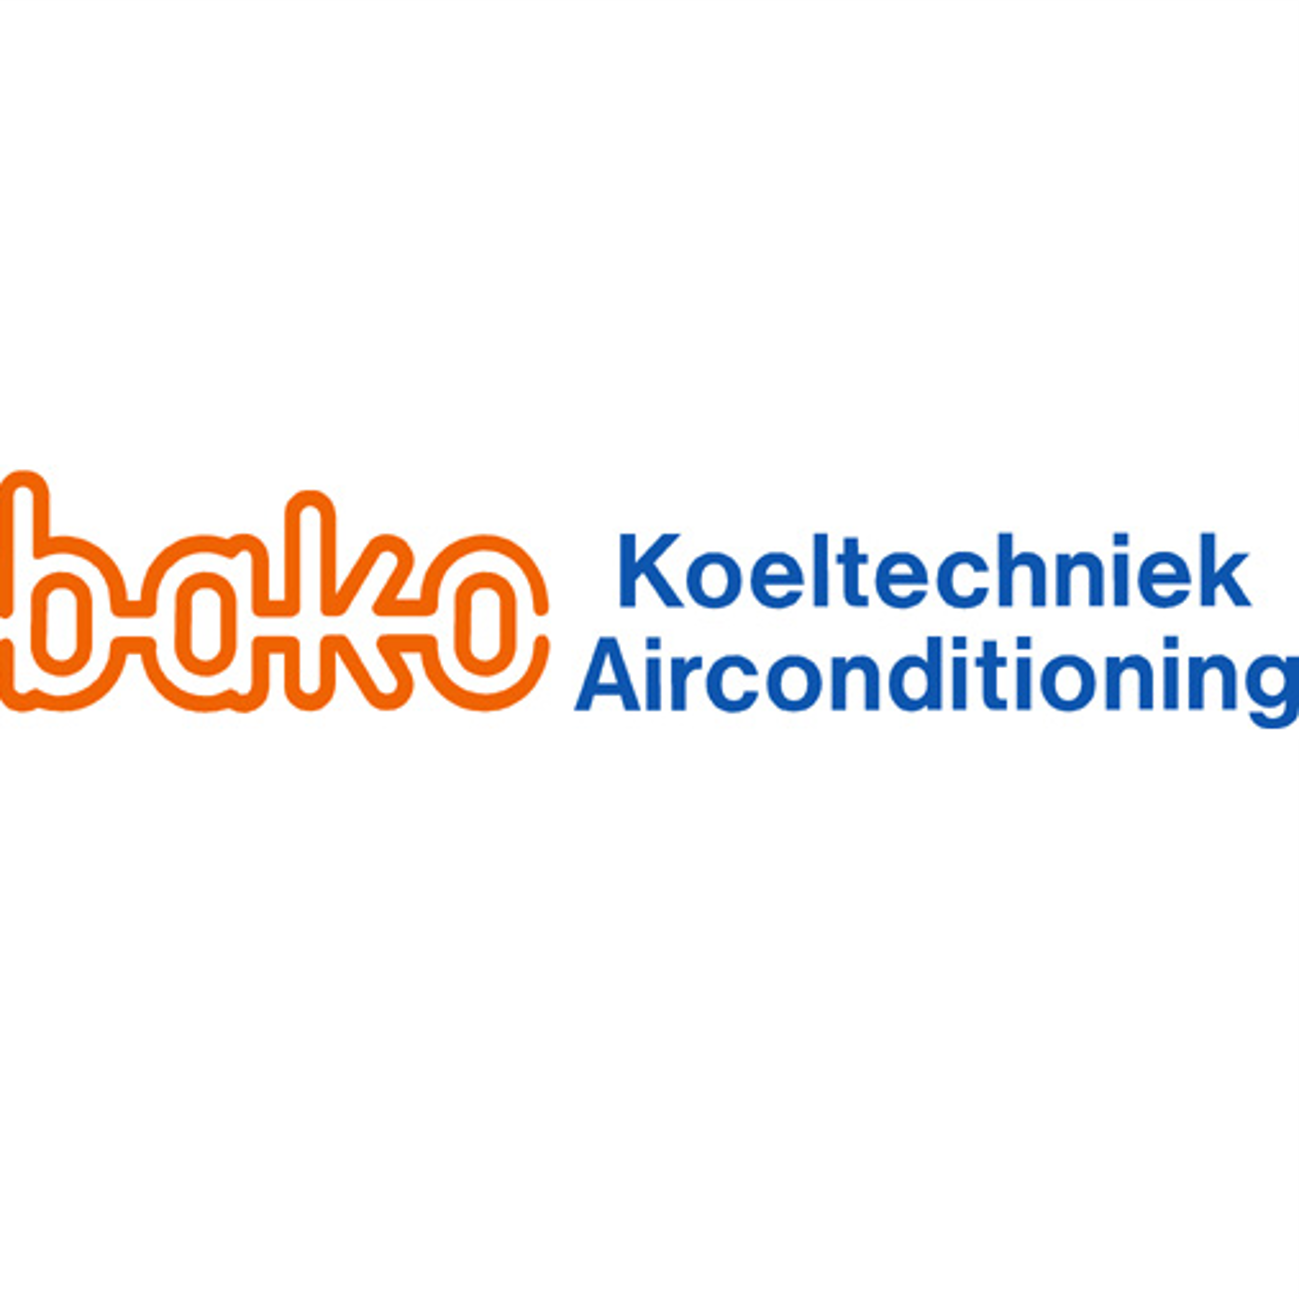 BAKO Koeltechniek & Airconditioning is Capabel